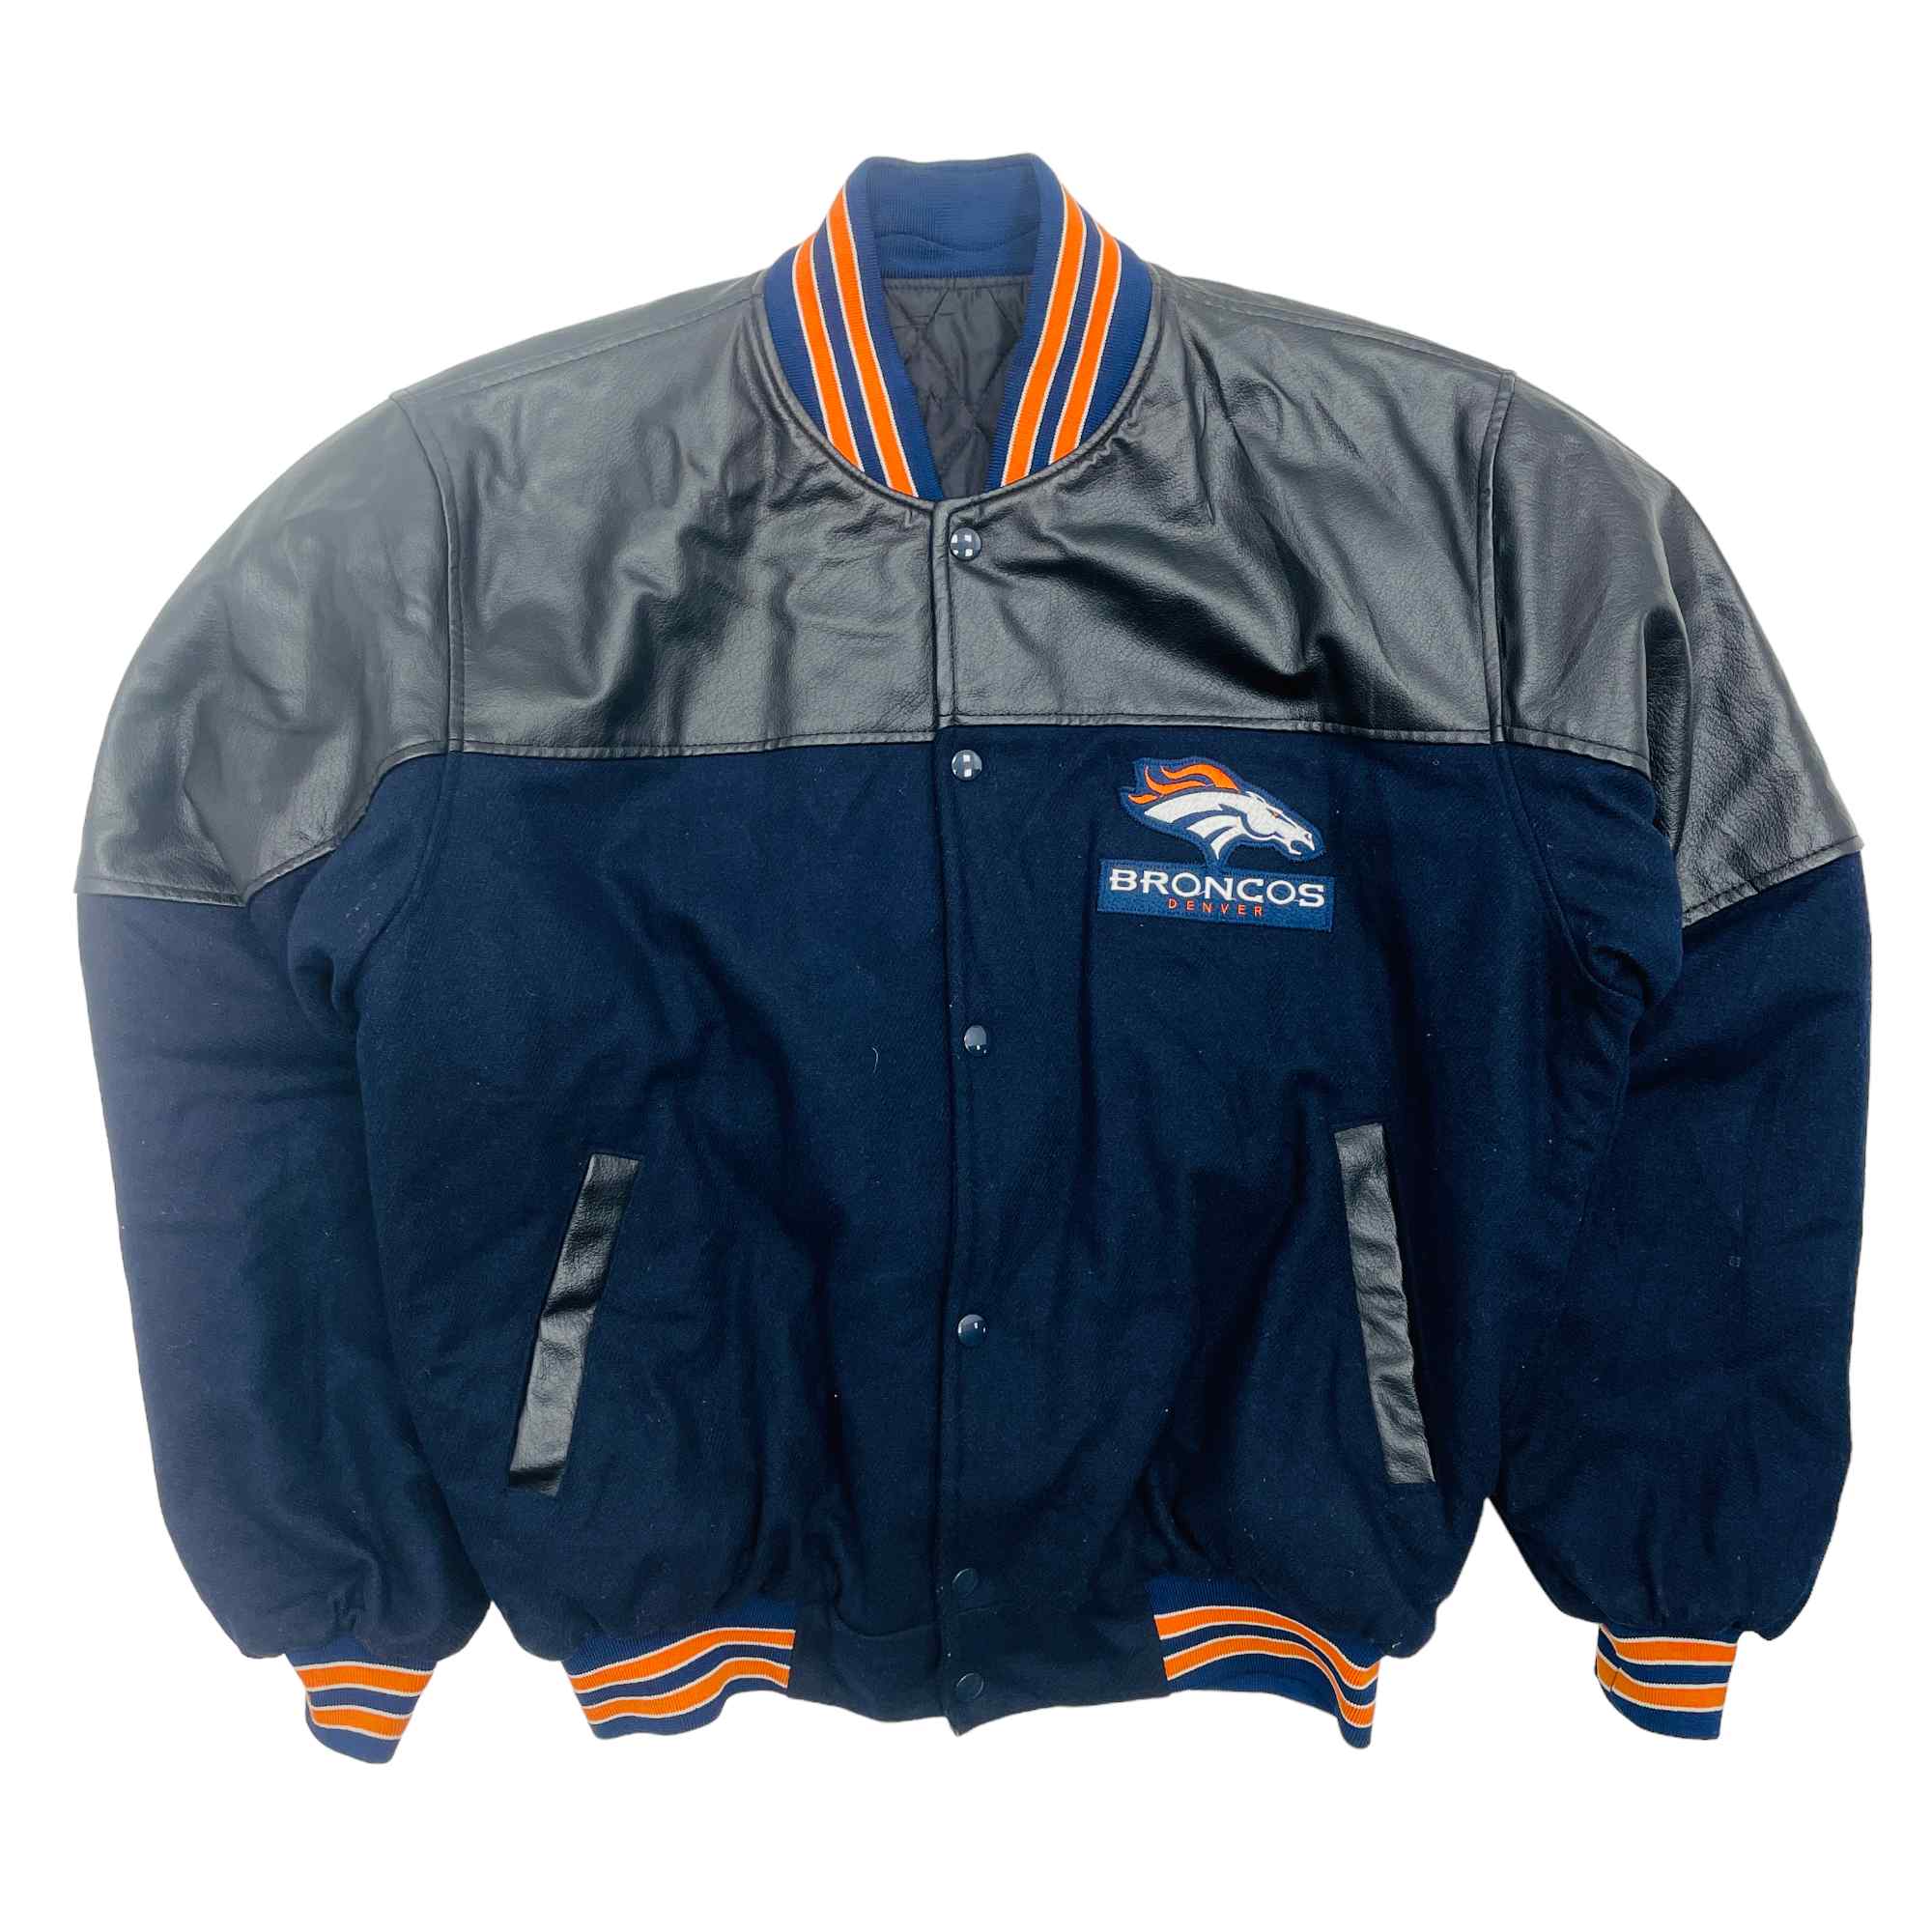 Denver Broncos NFL Varsity Jacket - Large